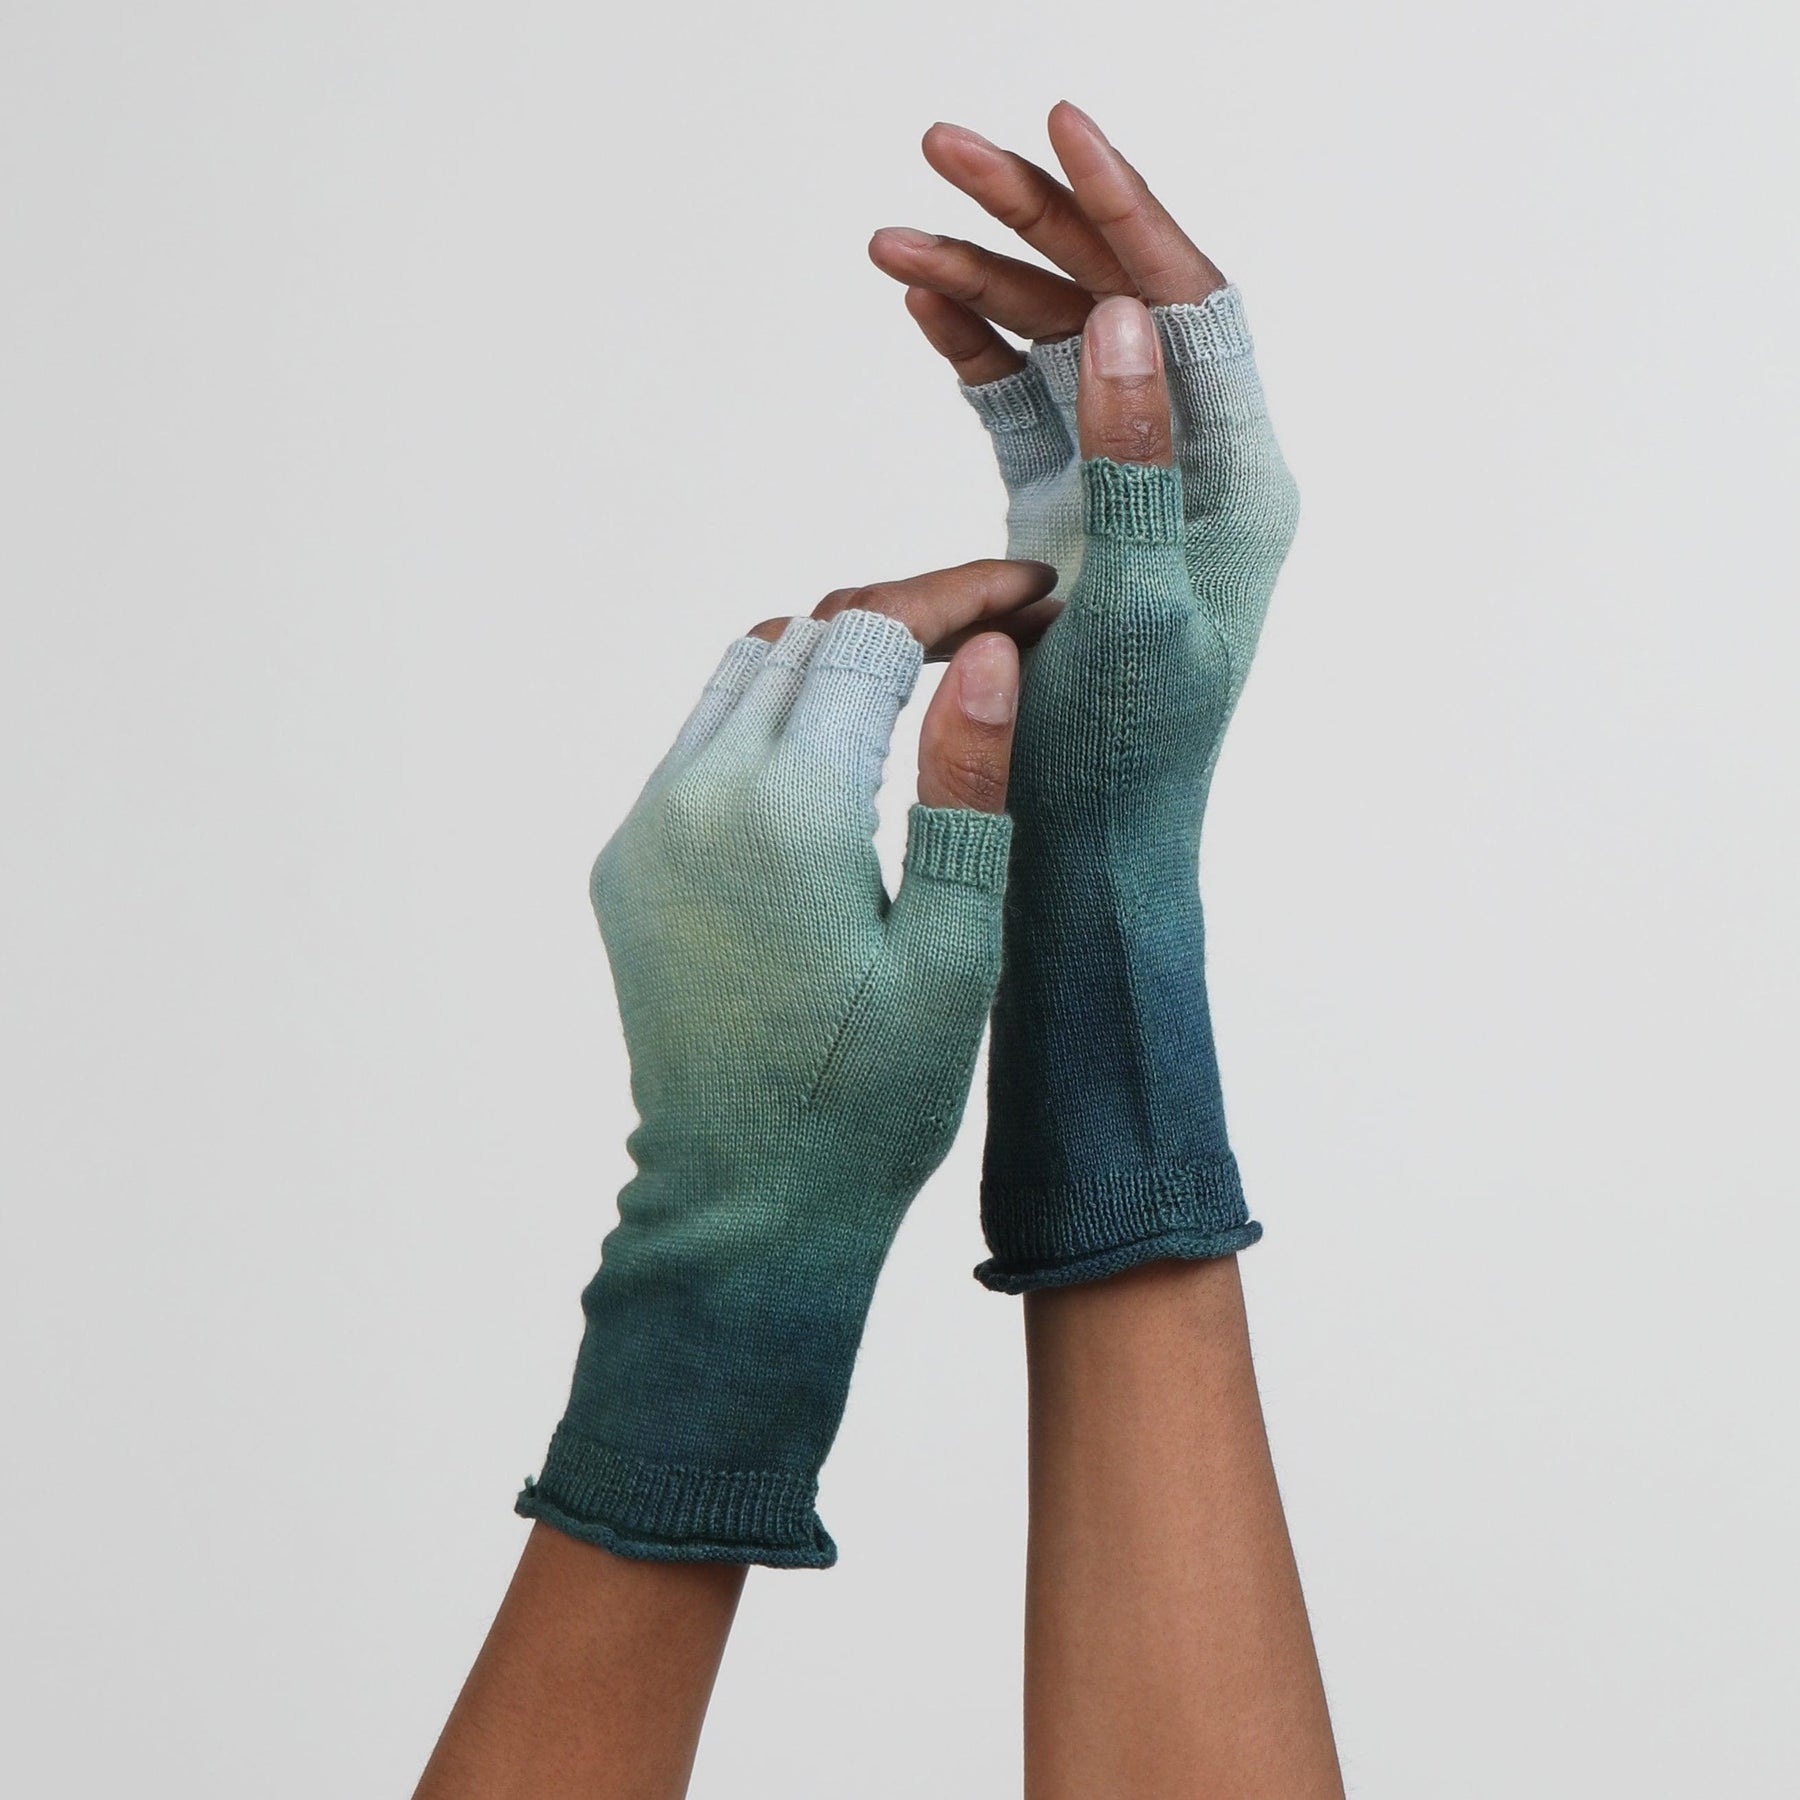 Green Dip Dye Fingerless Gloves by Seymoure Gloves.